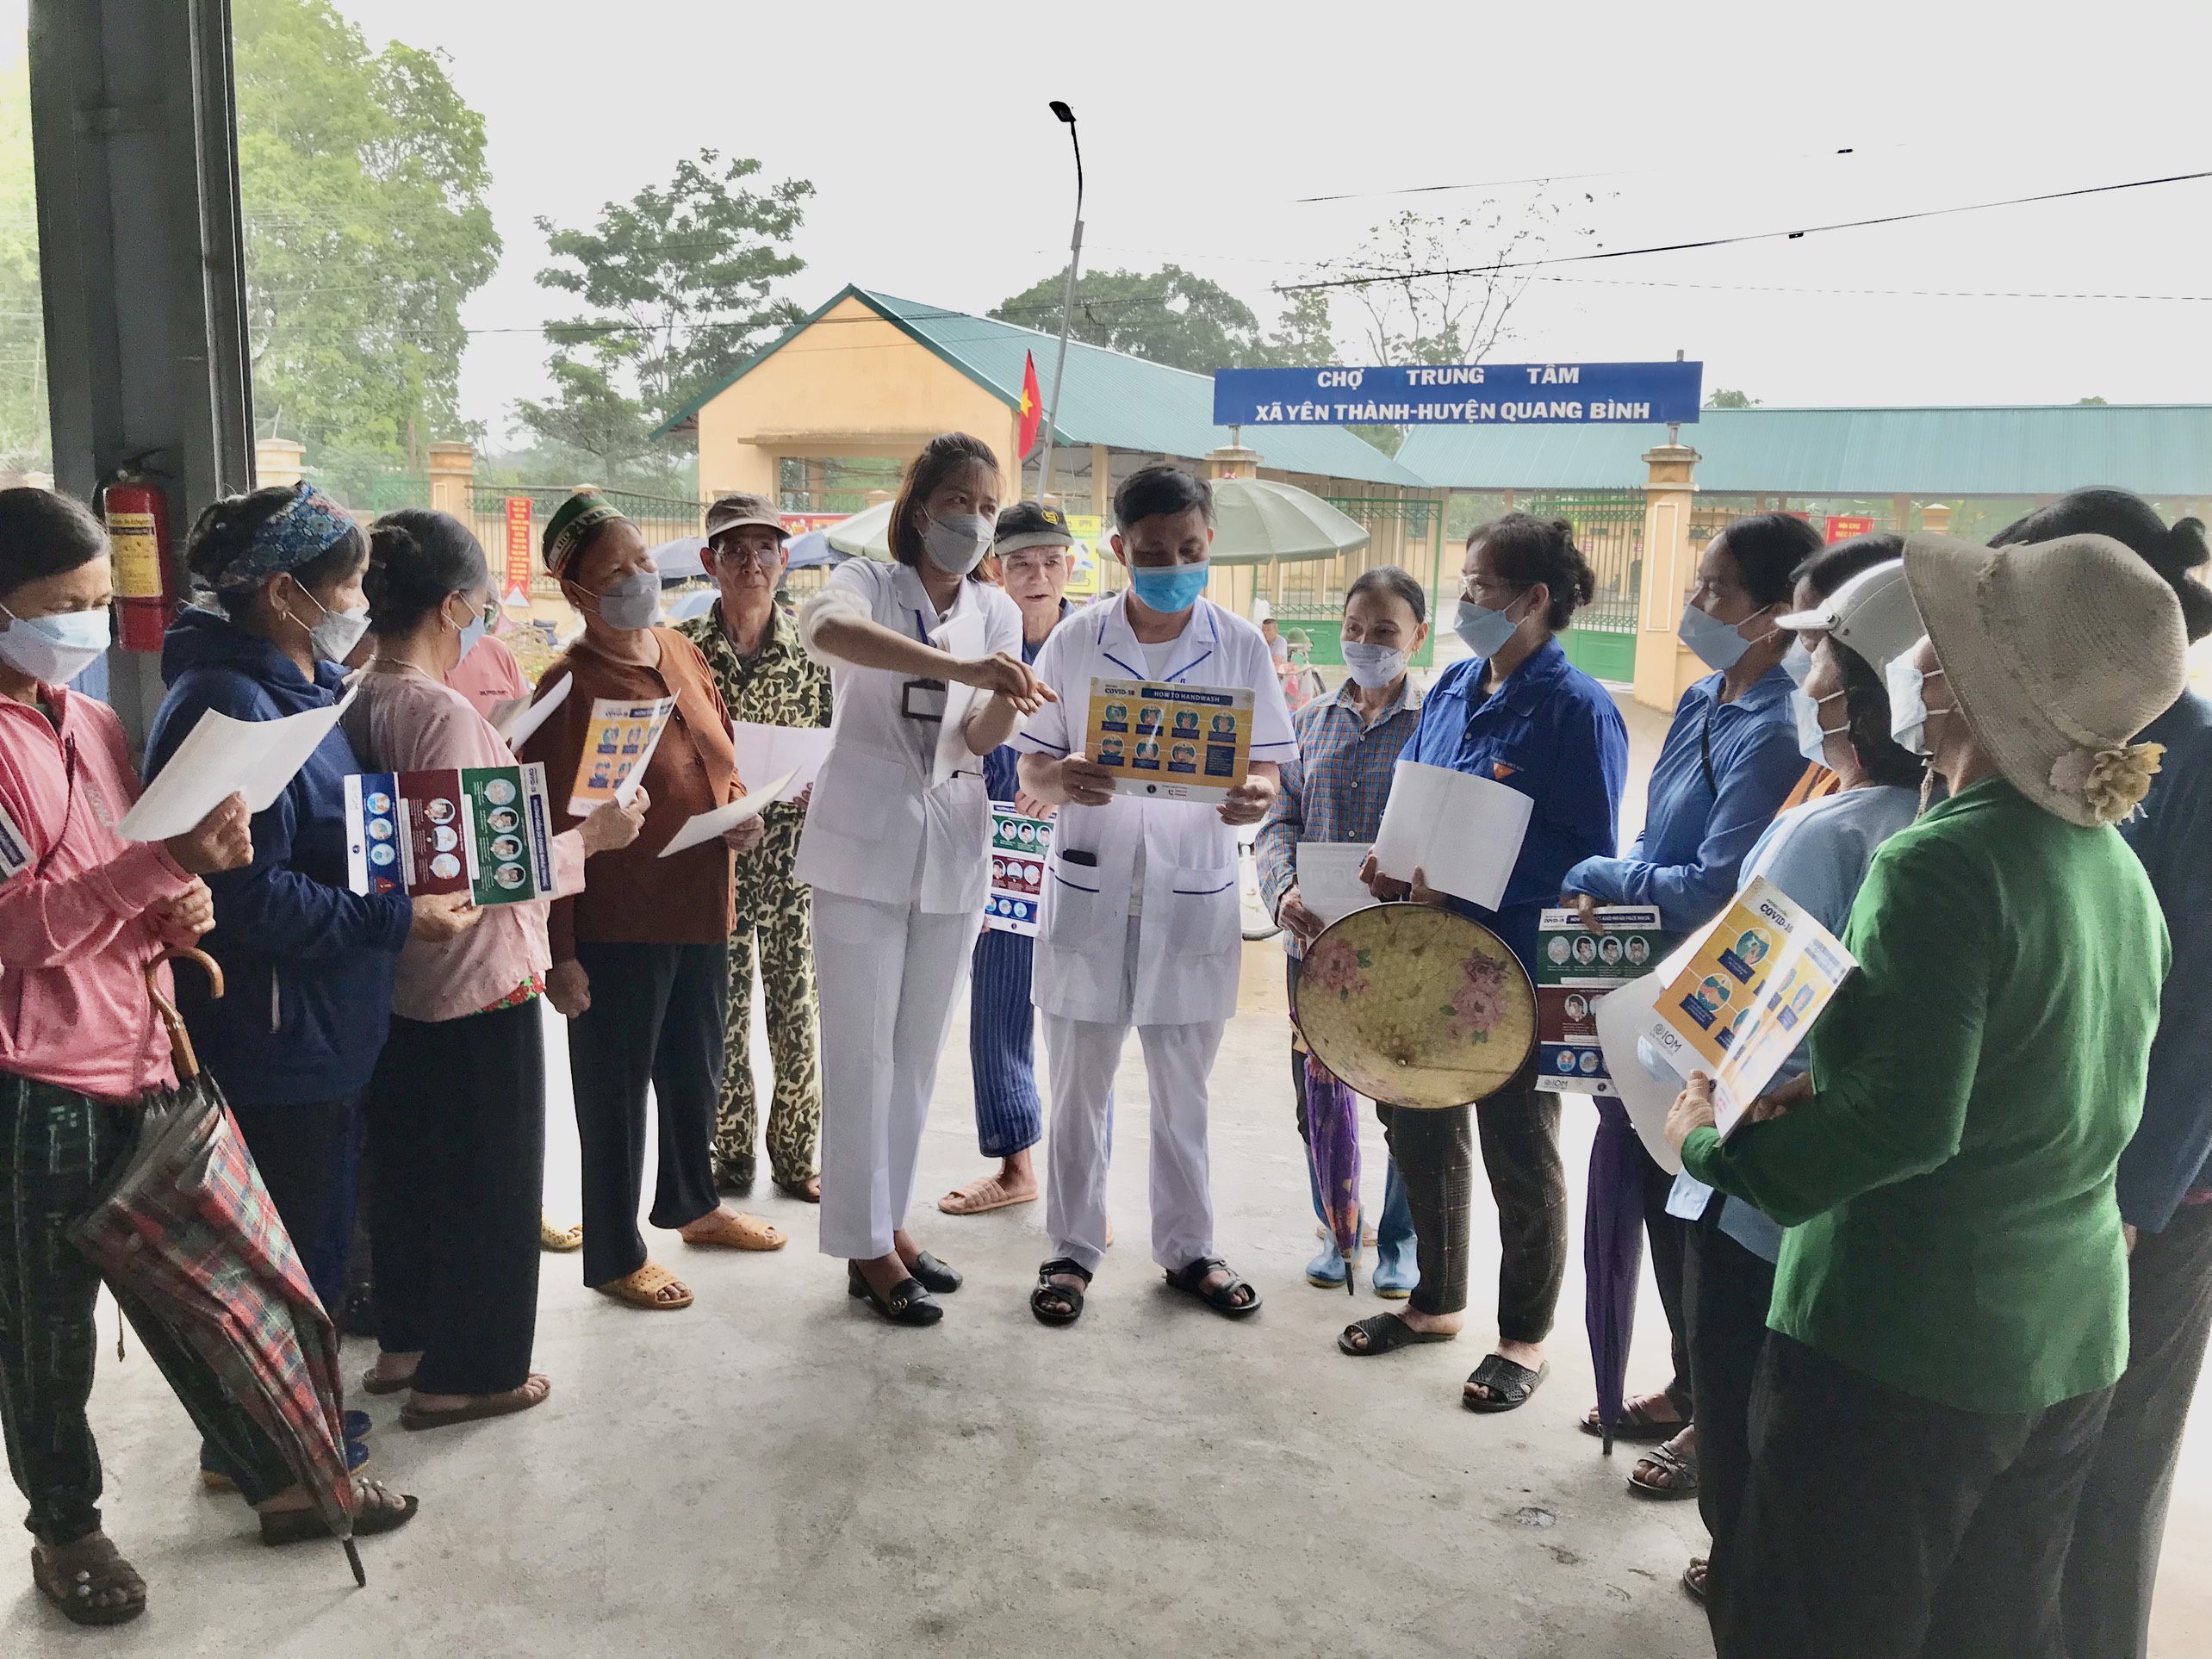 Cán bộ y tế hướng dẫn người dân các biện pháp phòng chống COVID-19 và phòng chống bệnh đậu mùa khỉ tại chợ phiên xã Yên Thành huyện Quang Bình.